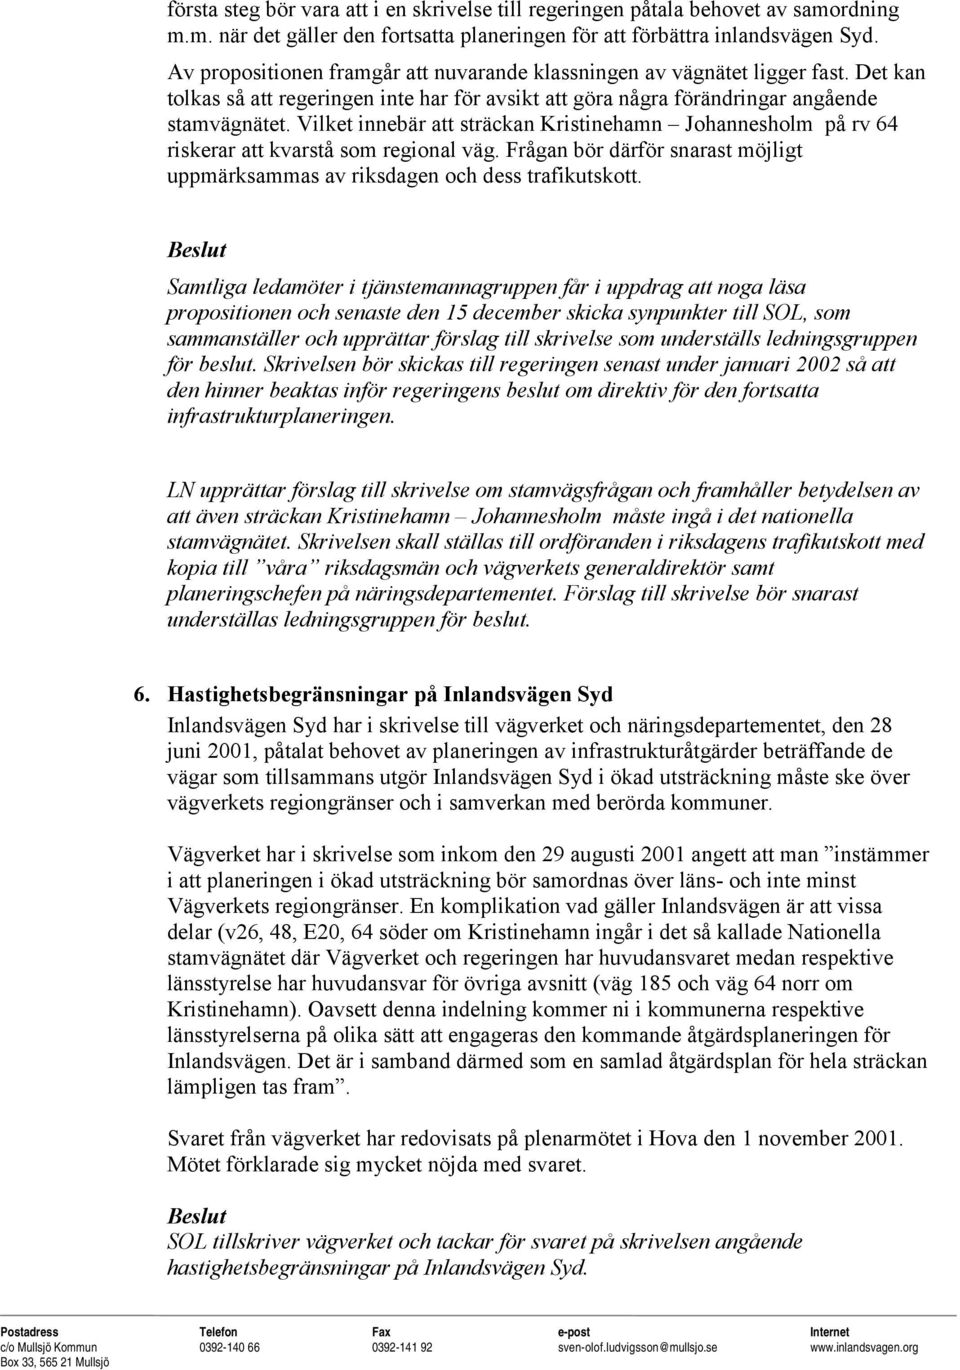 Vilket innebär att sträckan Kristinehamn Johannesholm på rv 64 riskerar att kvarstå som regional väg. Frågan bör därför snarast möjligt uppmärksammas av riksdagen och dess trafikutskott.